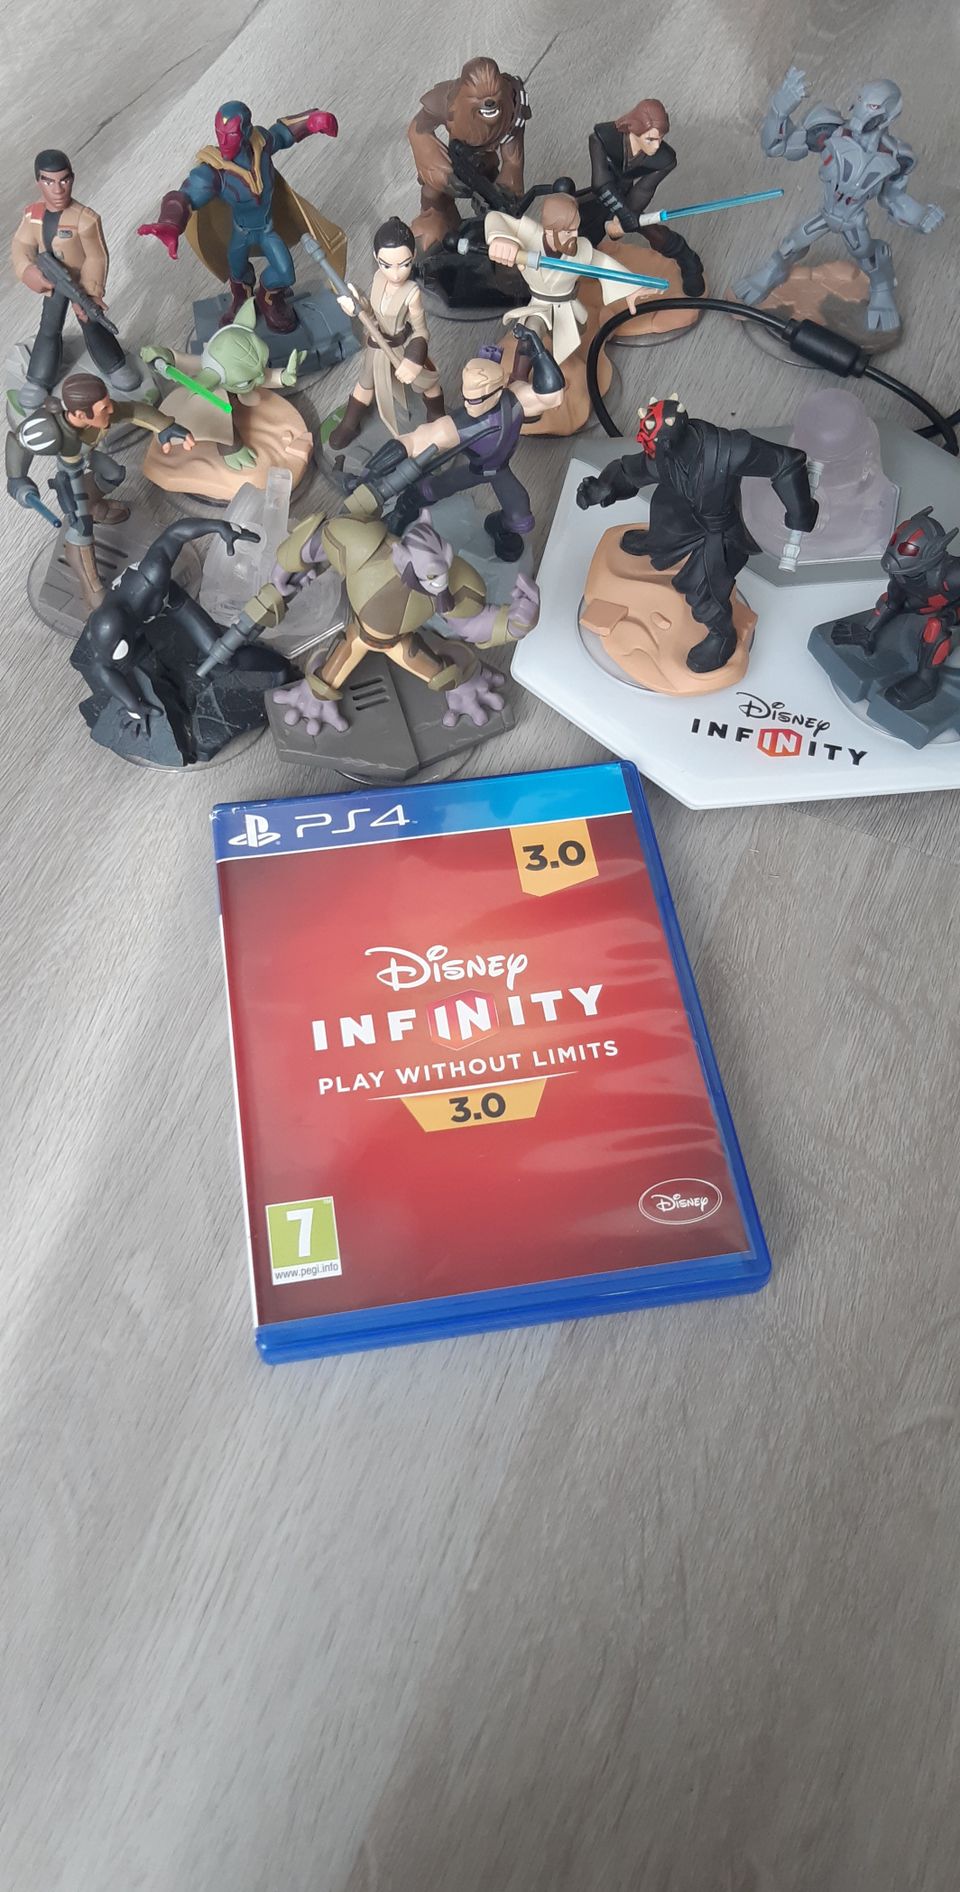 Disney infinity 3.0